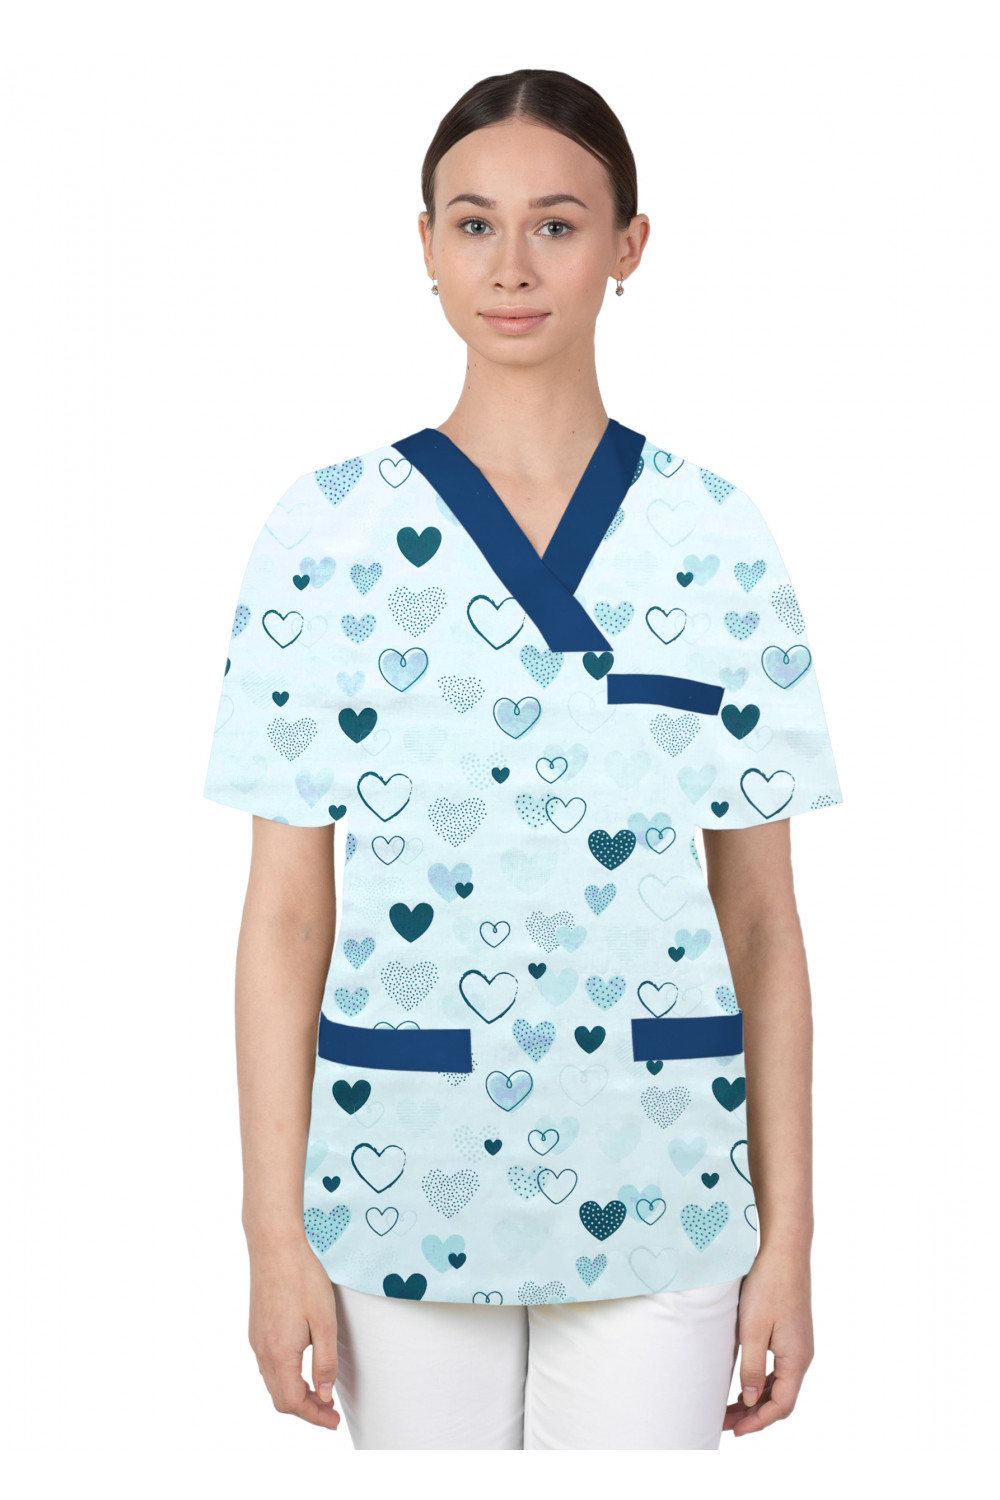 Bluza medyczna we wzorki kolorowa damska M-074G serca wzorzyste granatowe na białym tle